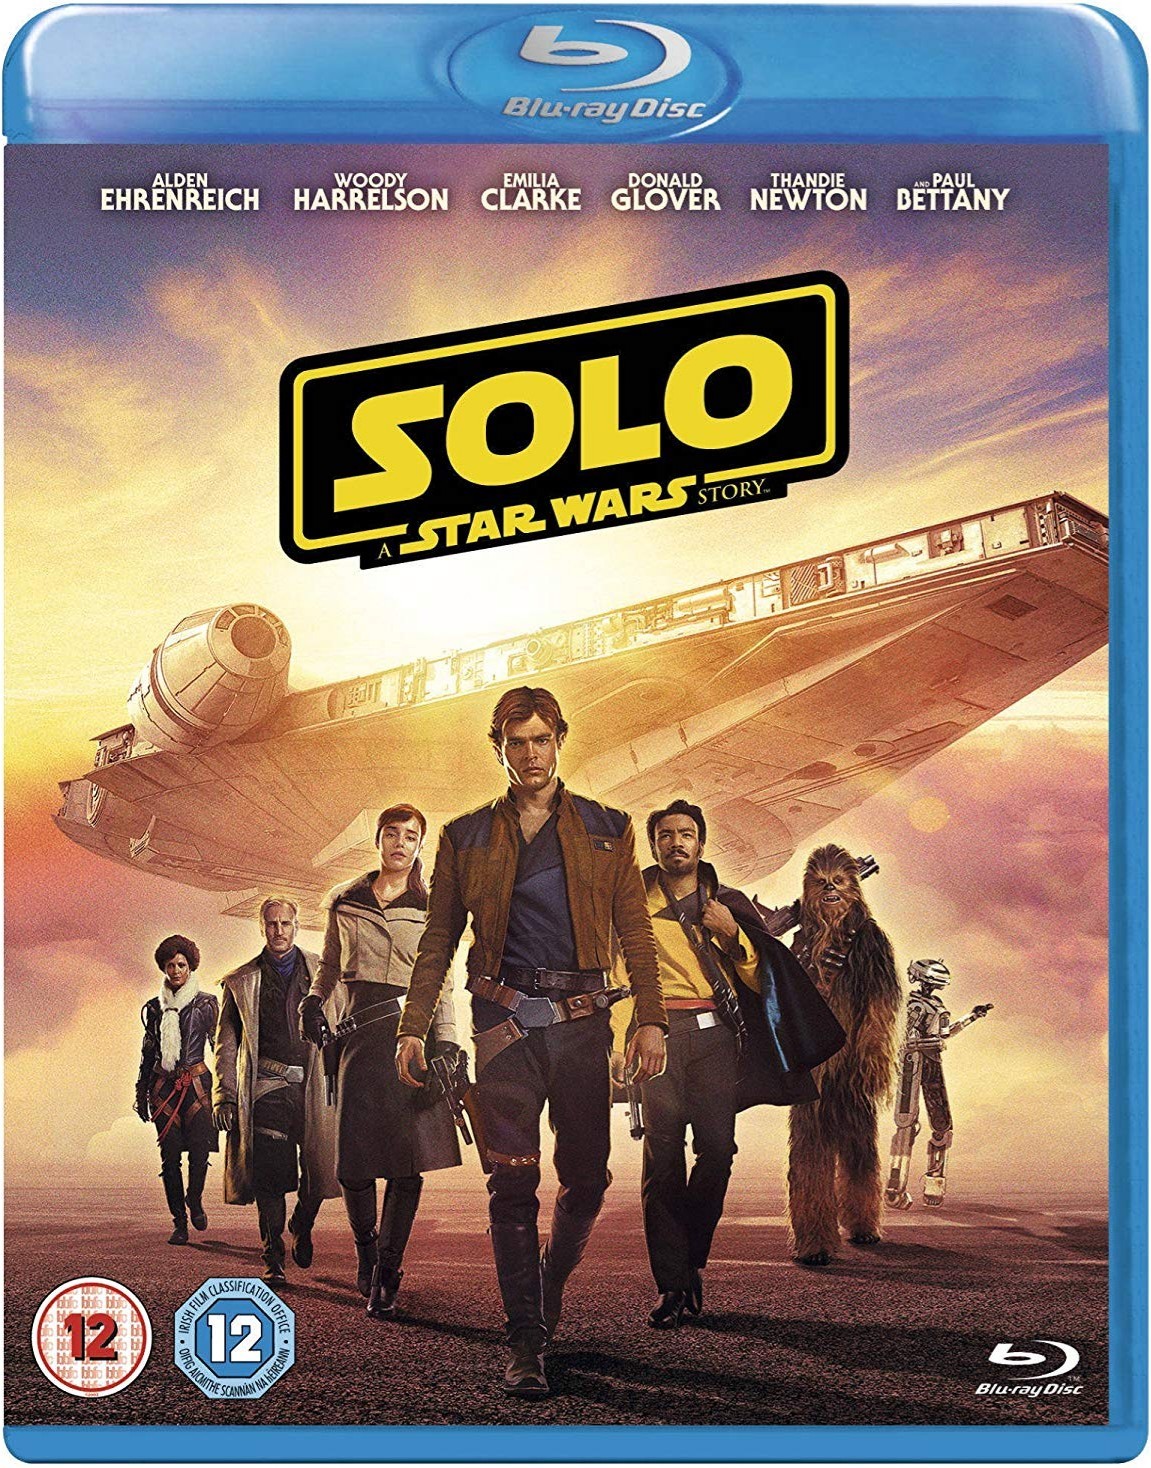 [游侠索罗传].Solo.A.Star.Wars.Story.2018.BluRay.1080p.AVC.DTS-HD.MA7.1-DIY@HDHome  41.10GB-1.jpg